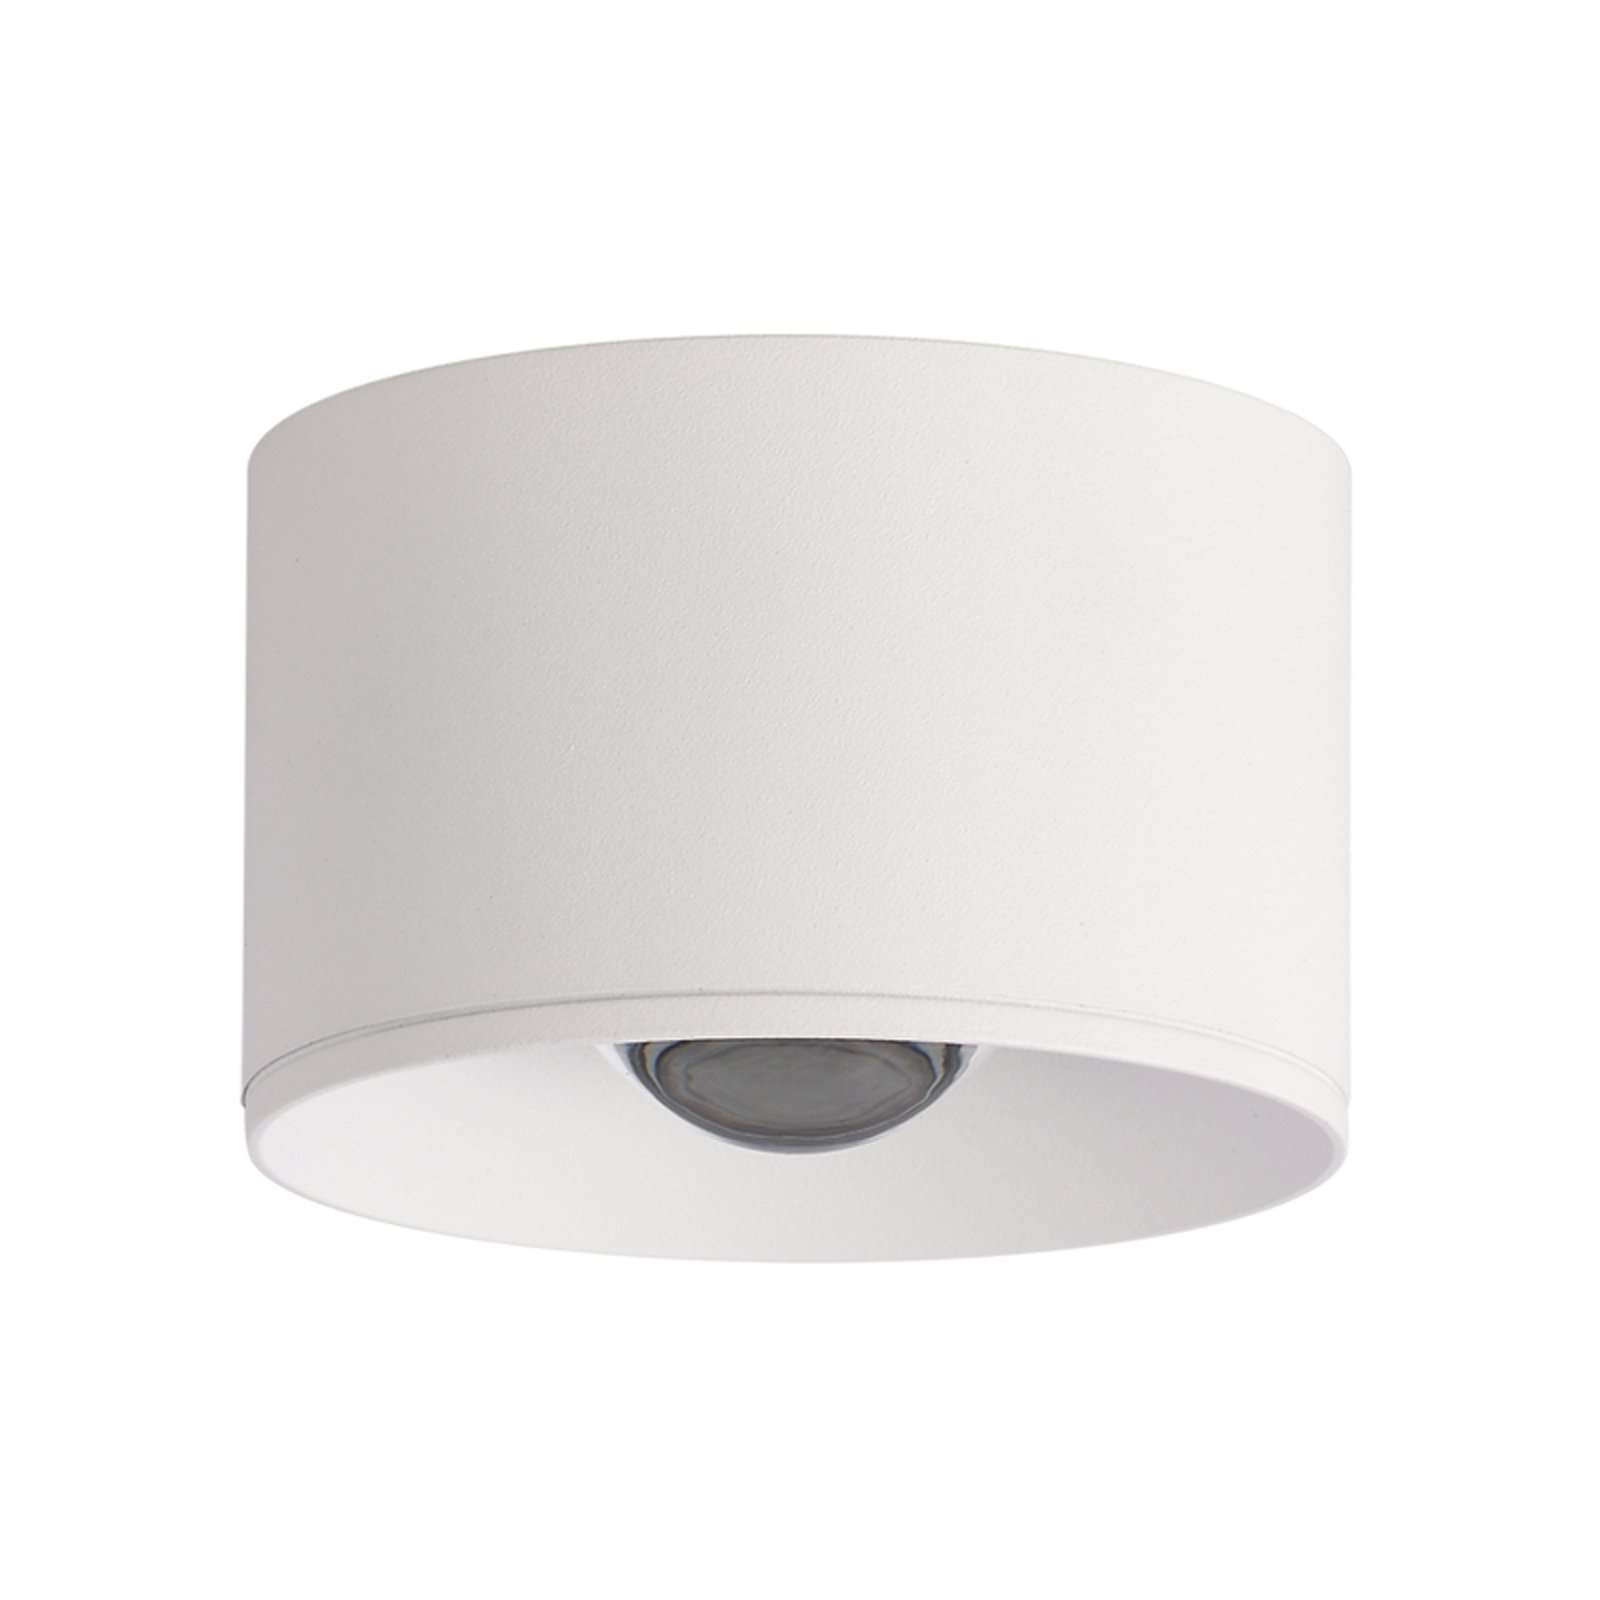 LED spot pour plafond LED S134 Ø 6,5 cm, blanc sable